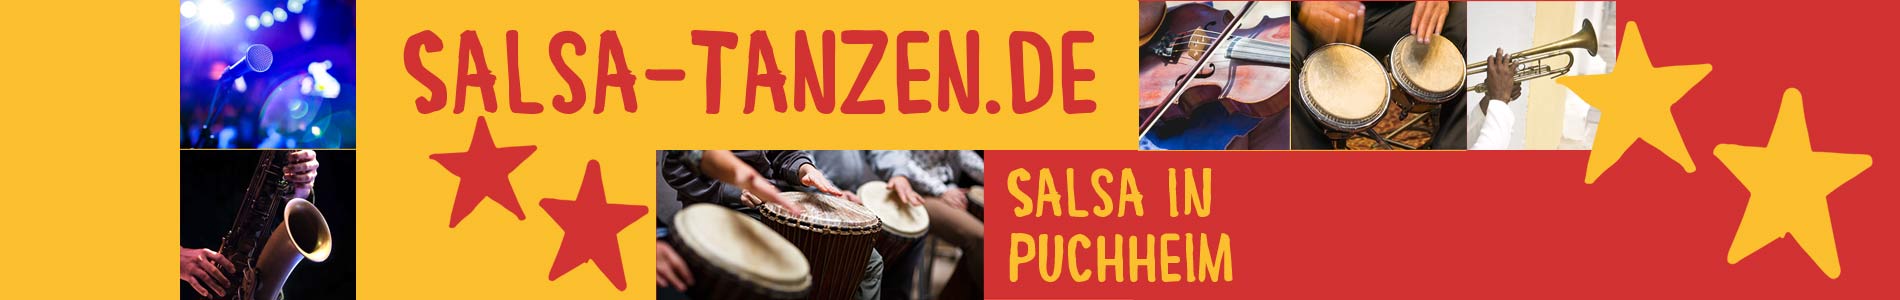 Salsa in Puchheim – Salsa lernen und tanzen, Tanzkurse, Partys, Veranstaltungen